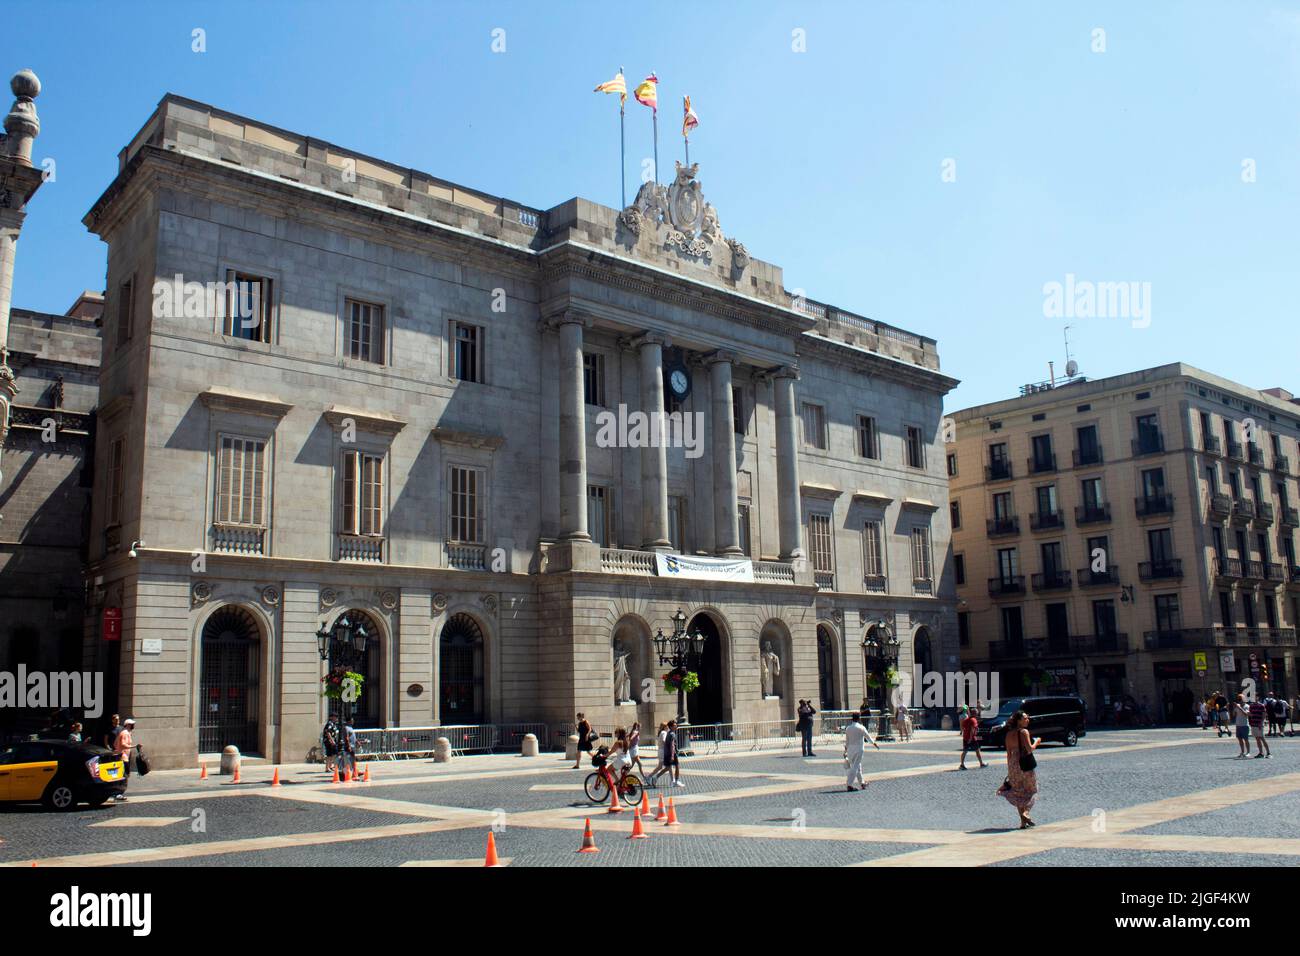 Municipio di Barcellona - Casa de la Ciutat de Barcelona Plaza Sant Jaume quartiere Gotico, il centro storico della città vecchia di Barcellona, Catalogna, Spagna Foto Stock